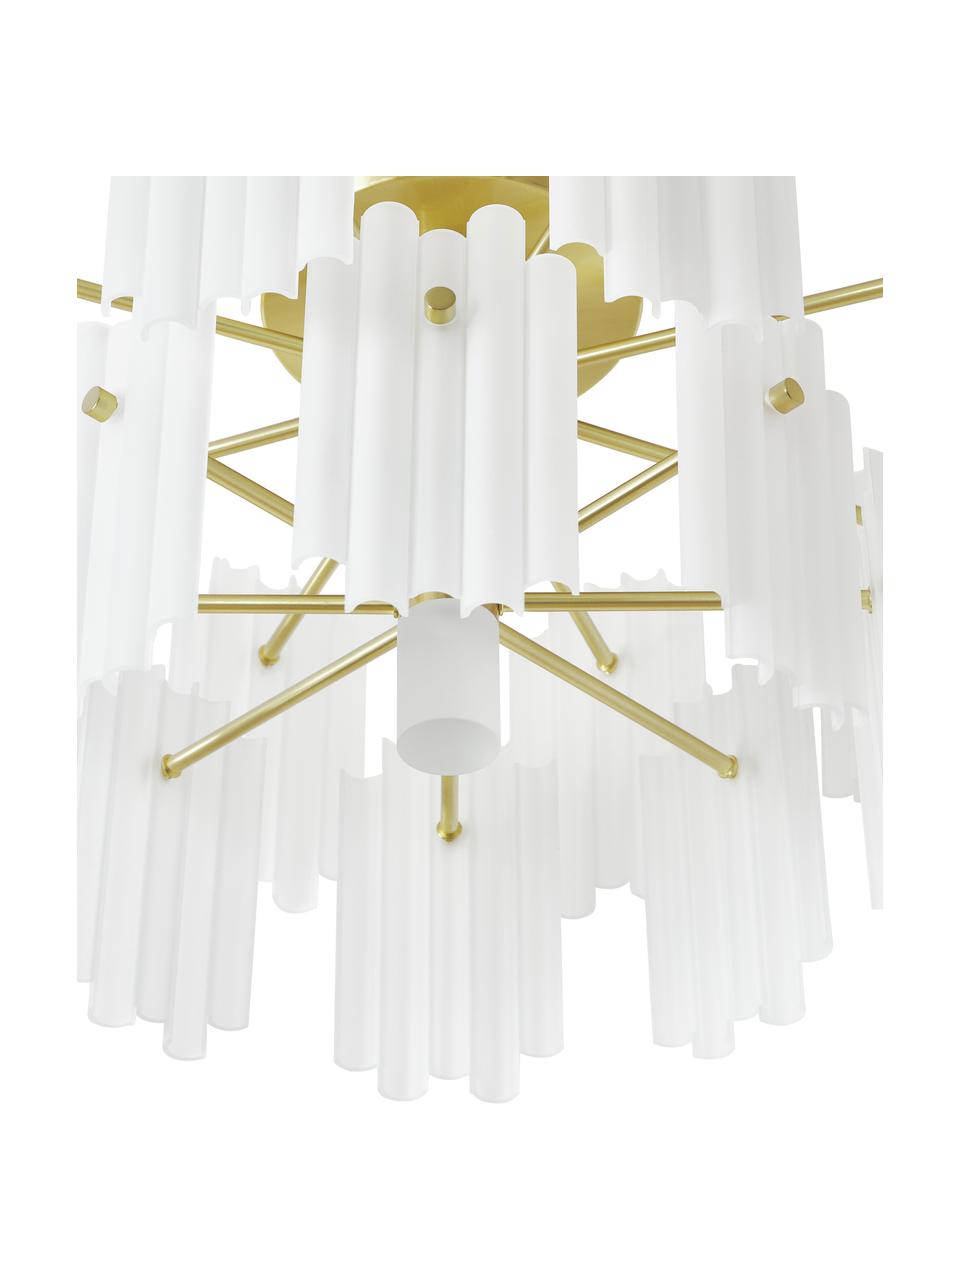 Grote LED plafondlamp Alenia in messingkleur, Lampenkap: acrylglas, Baldakijn: vermessingd metaal, Wit, messingkleurig, Ø 57 x H 34 cm